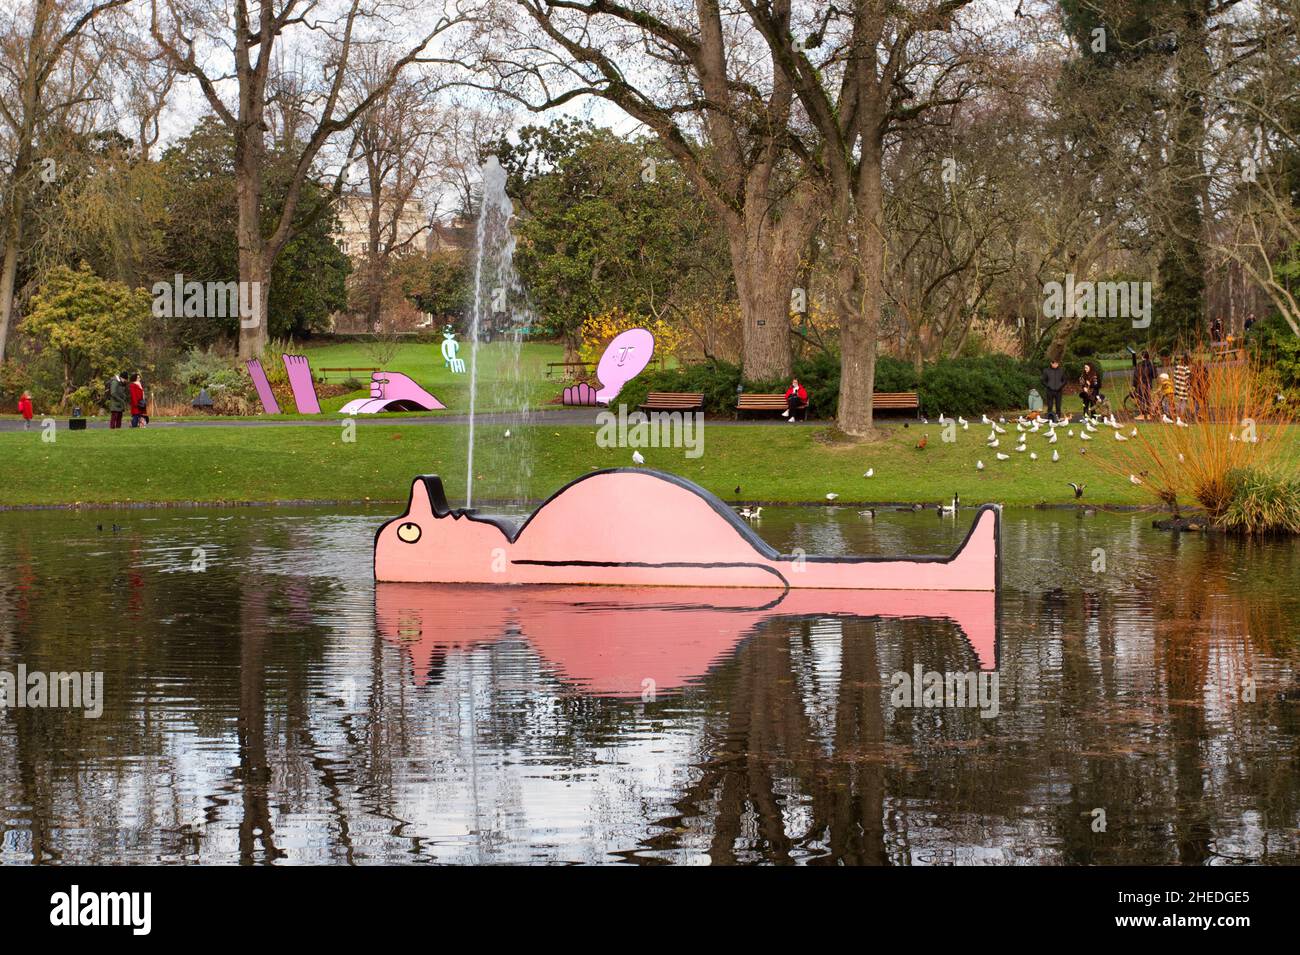 L'arroseur (The sprayer by Jean Julien for Le Voyage à Nantes arts festival) - Botanic Gardens - Nantes Stock Photo